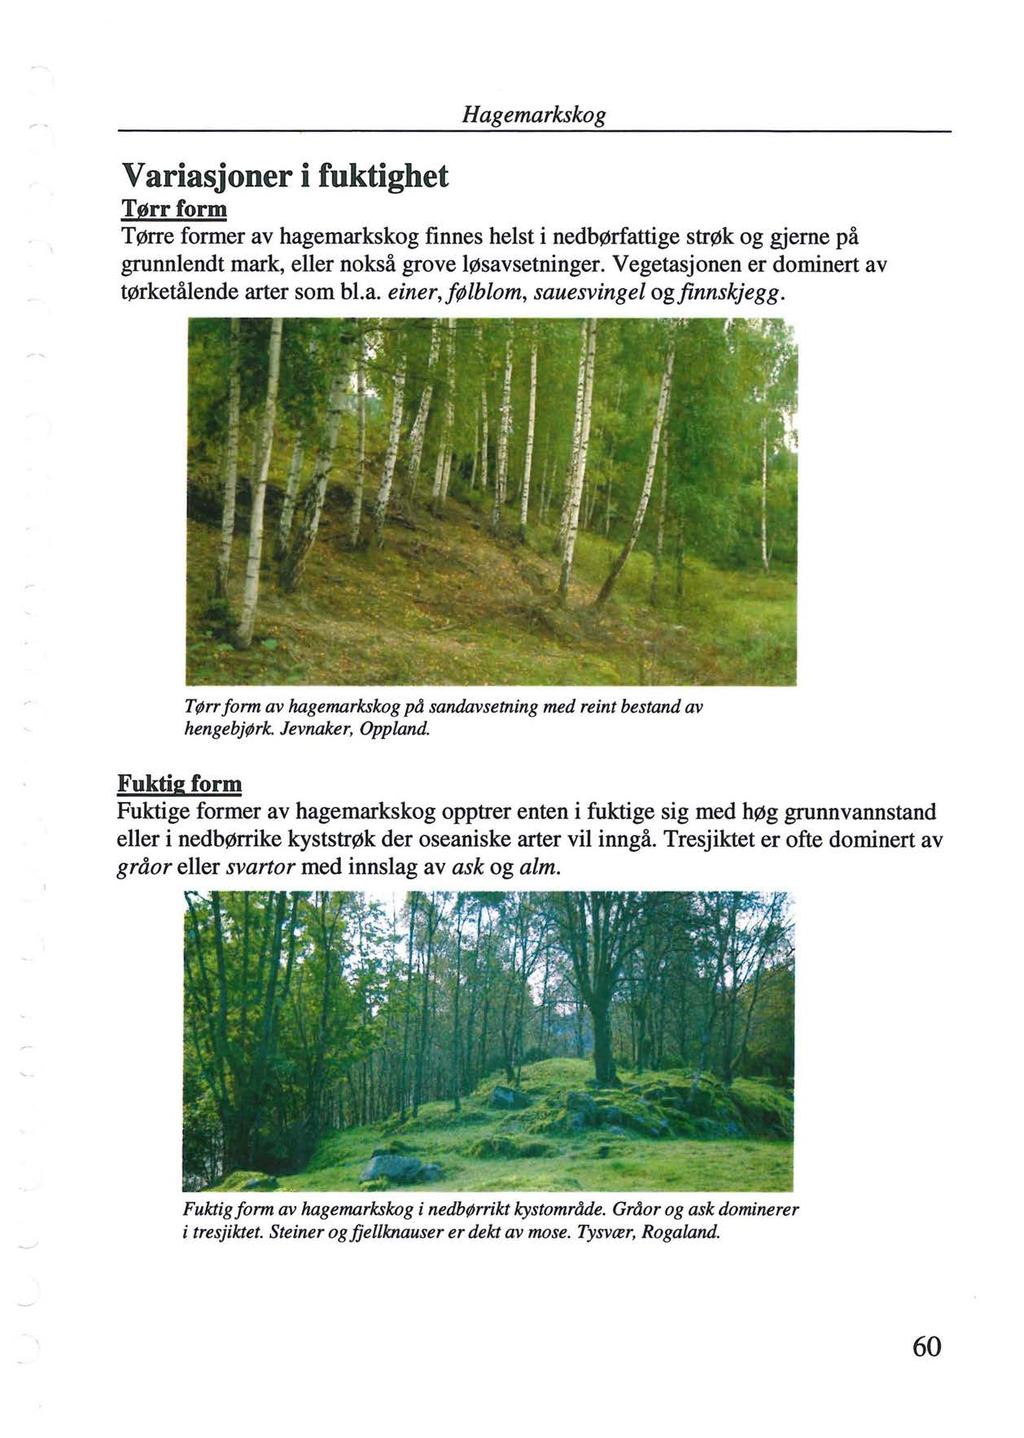 Variasjoner i fuktighet Hagemarkskog Tørrform Tørre former av hagemarkskog finnes helst i nedbørfattige strøk og gjerne på grunnlendt mark, eller nokså grove løsavsetninger.